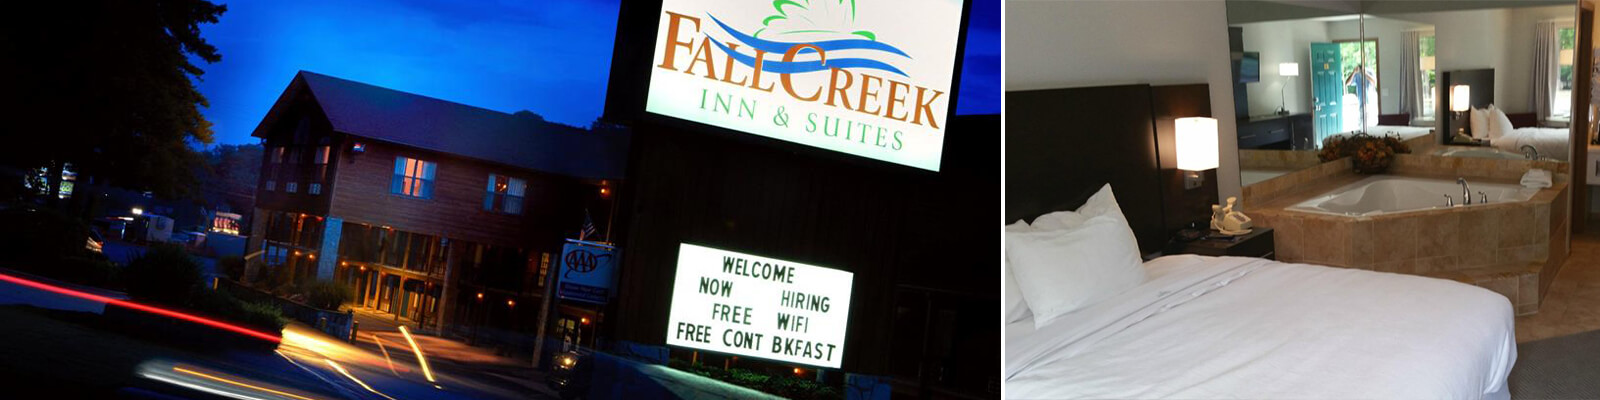 Fall Creek Inn Suites Branson Coupons